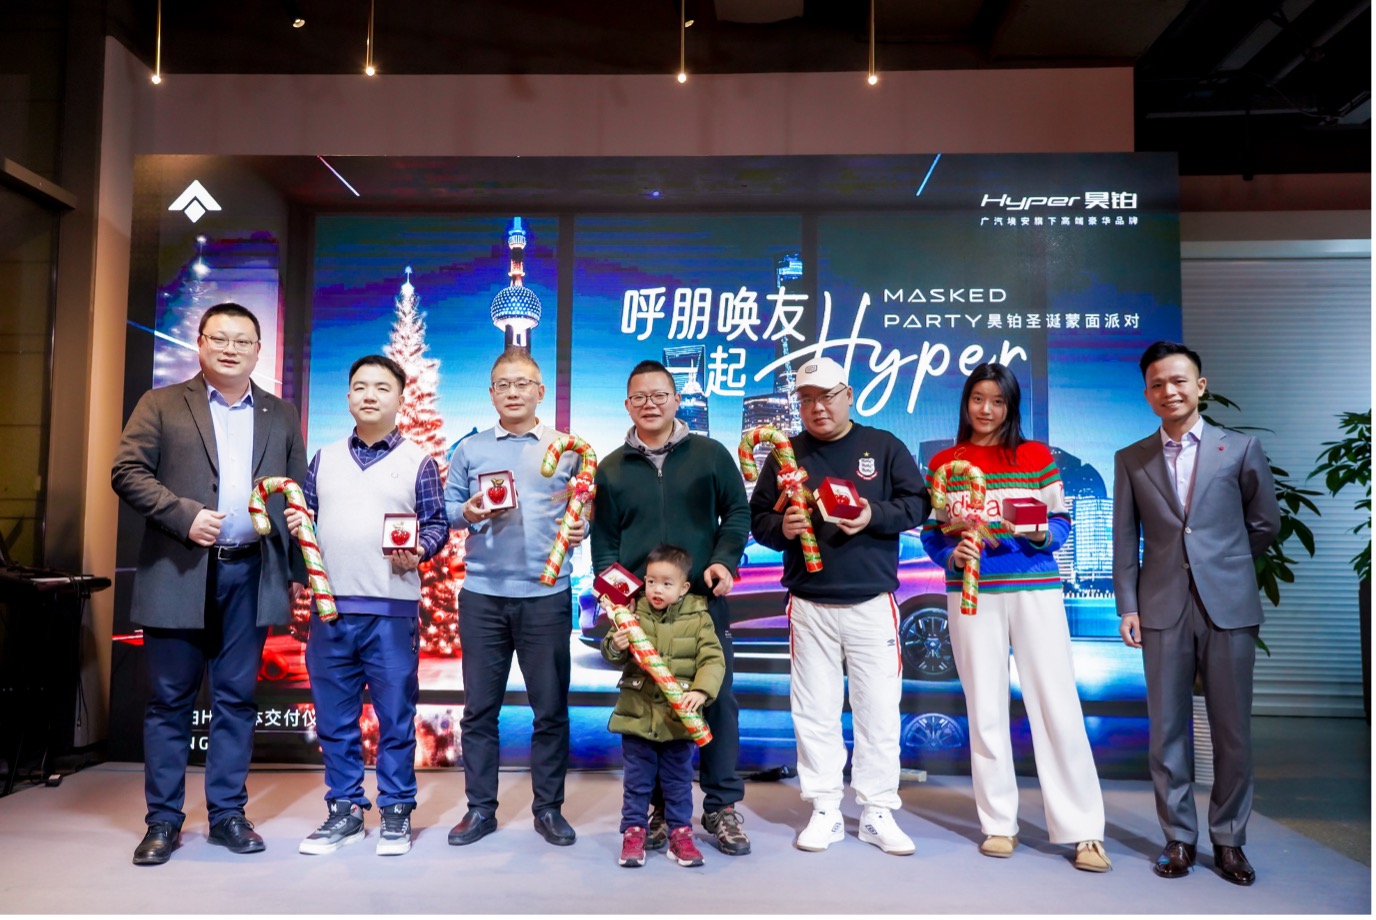 昊铂HT集体交付仪式在上海举办 多重购车补贴正在派发中